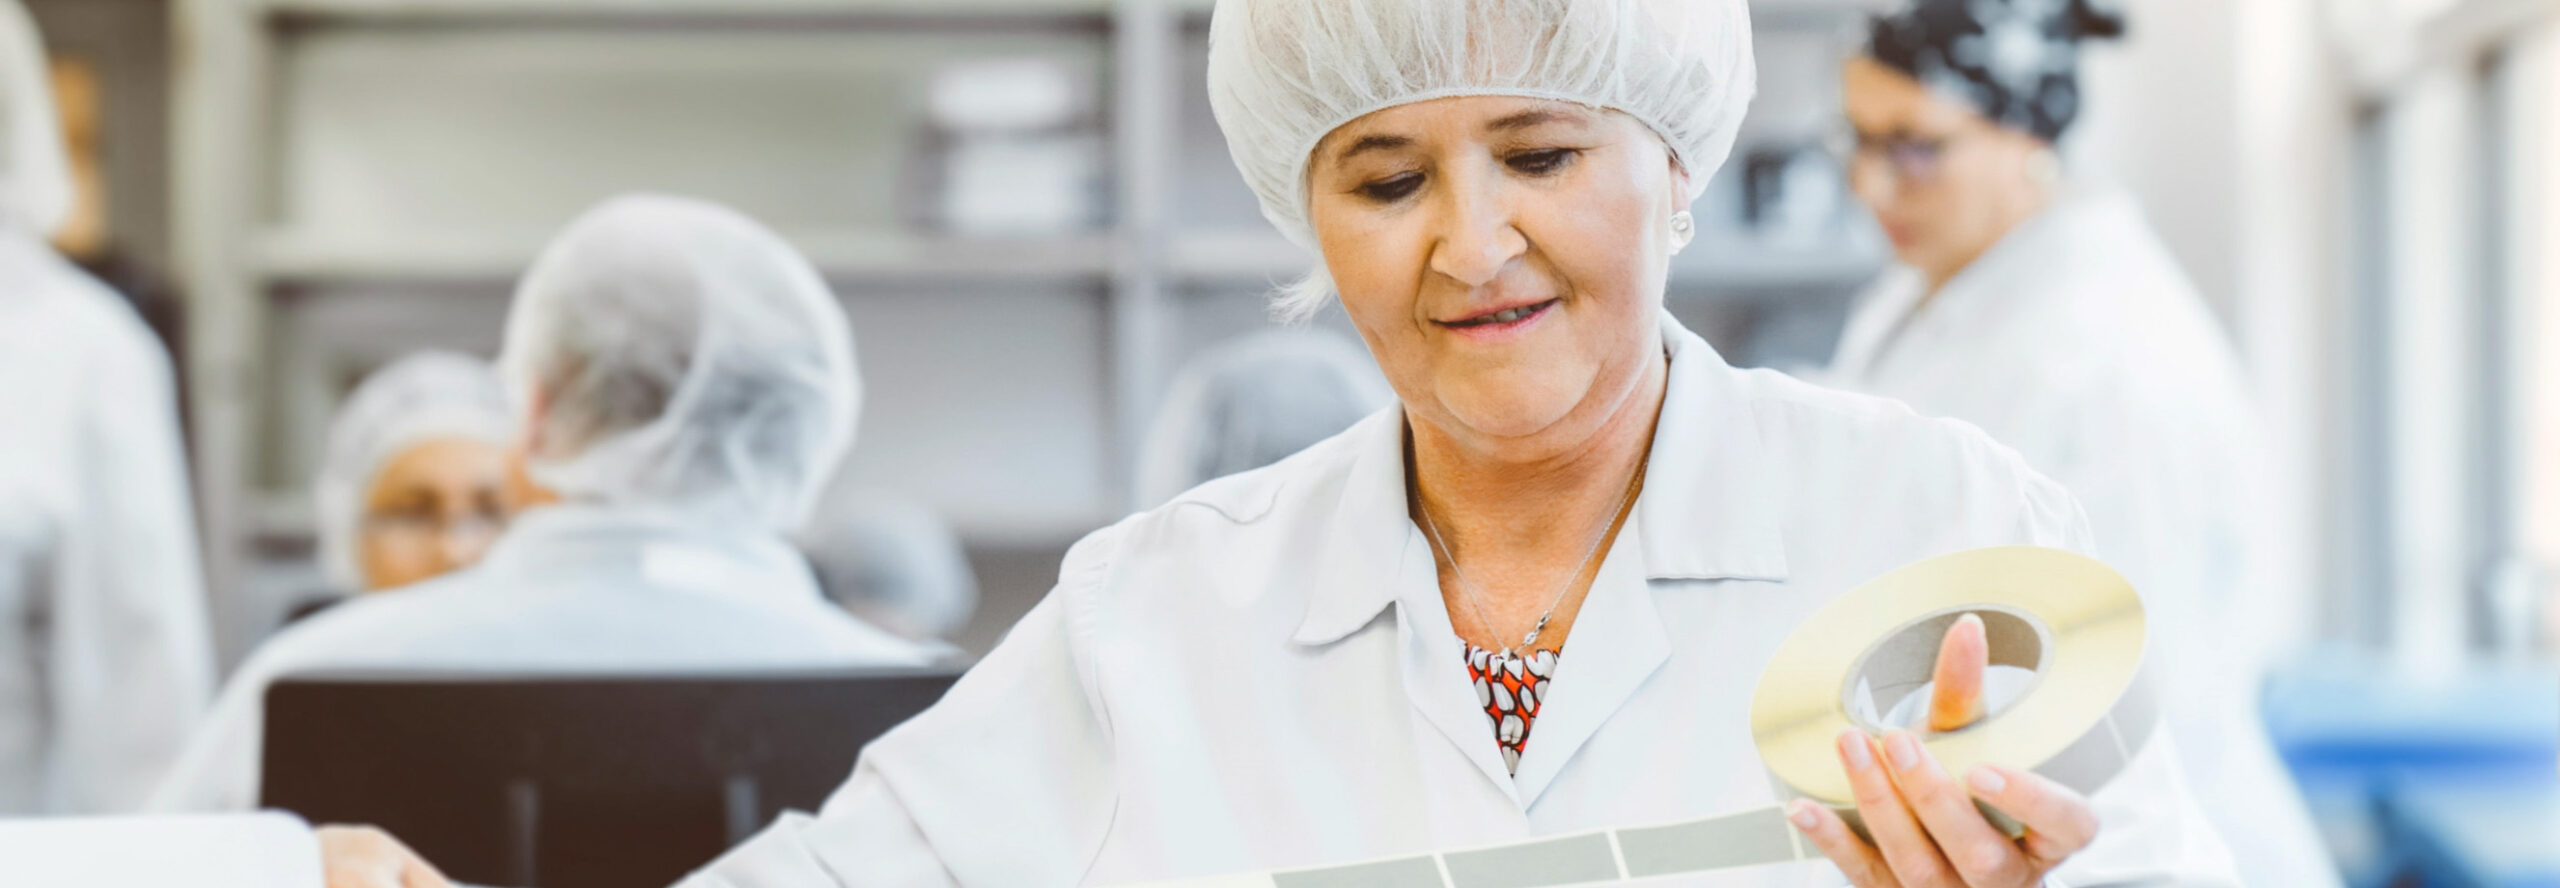 Einblick in die Produktion von Arzneimittelimporteur CC Pharma. Mitarbeiterin Eva Weber prüft Etiketten.